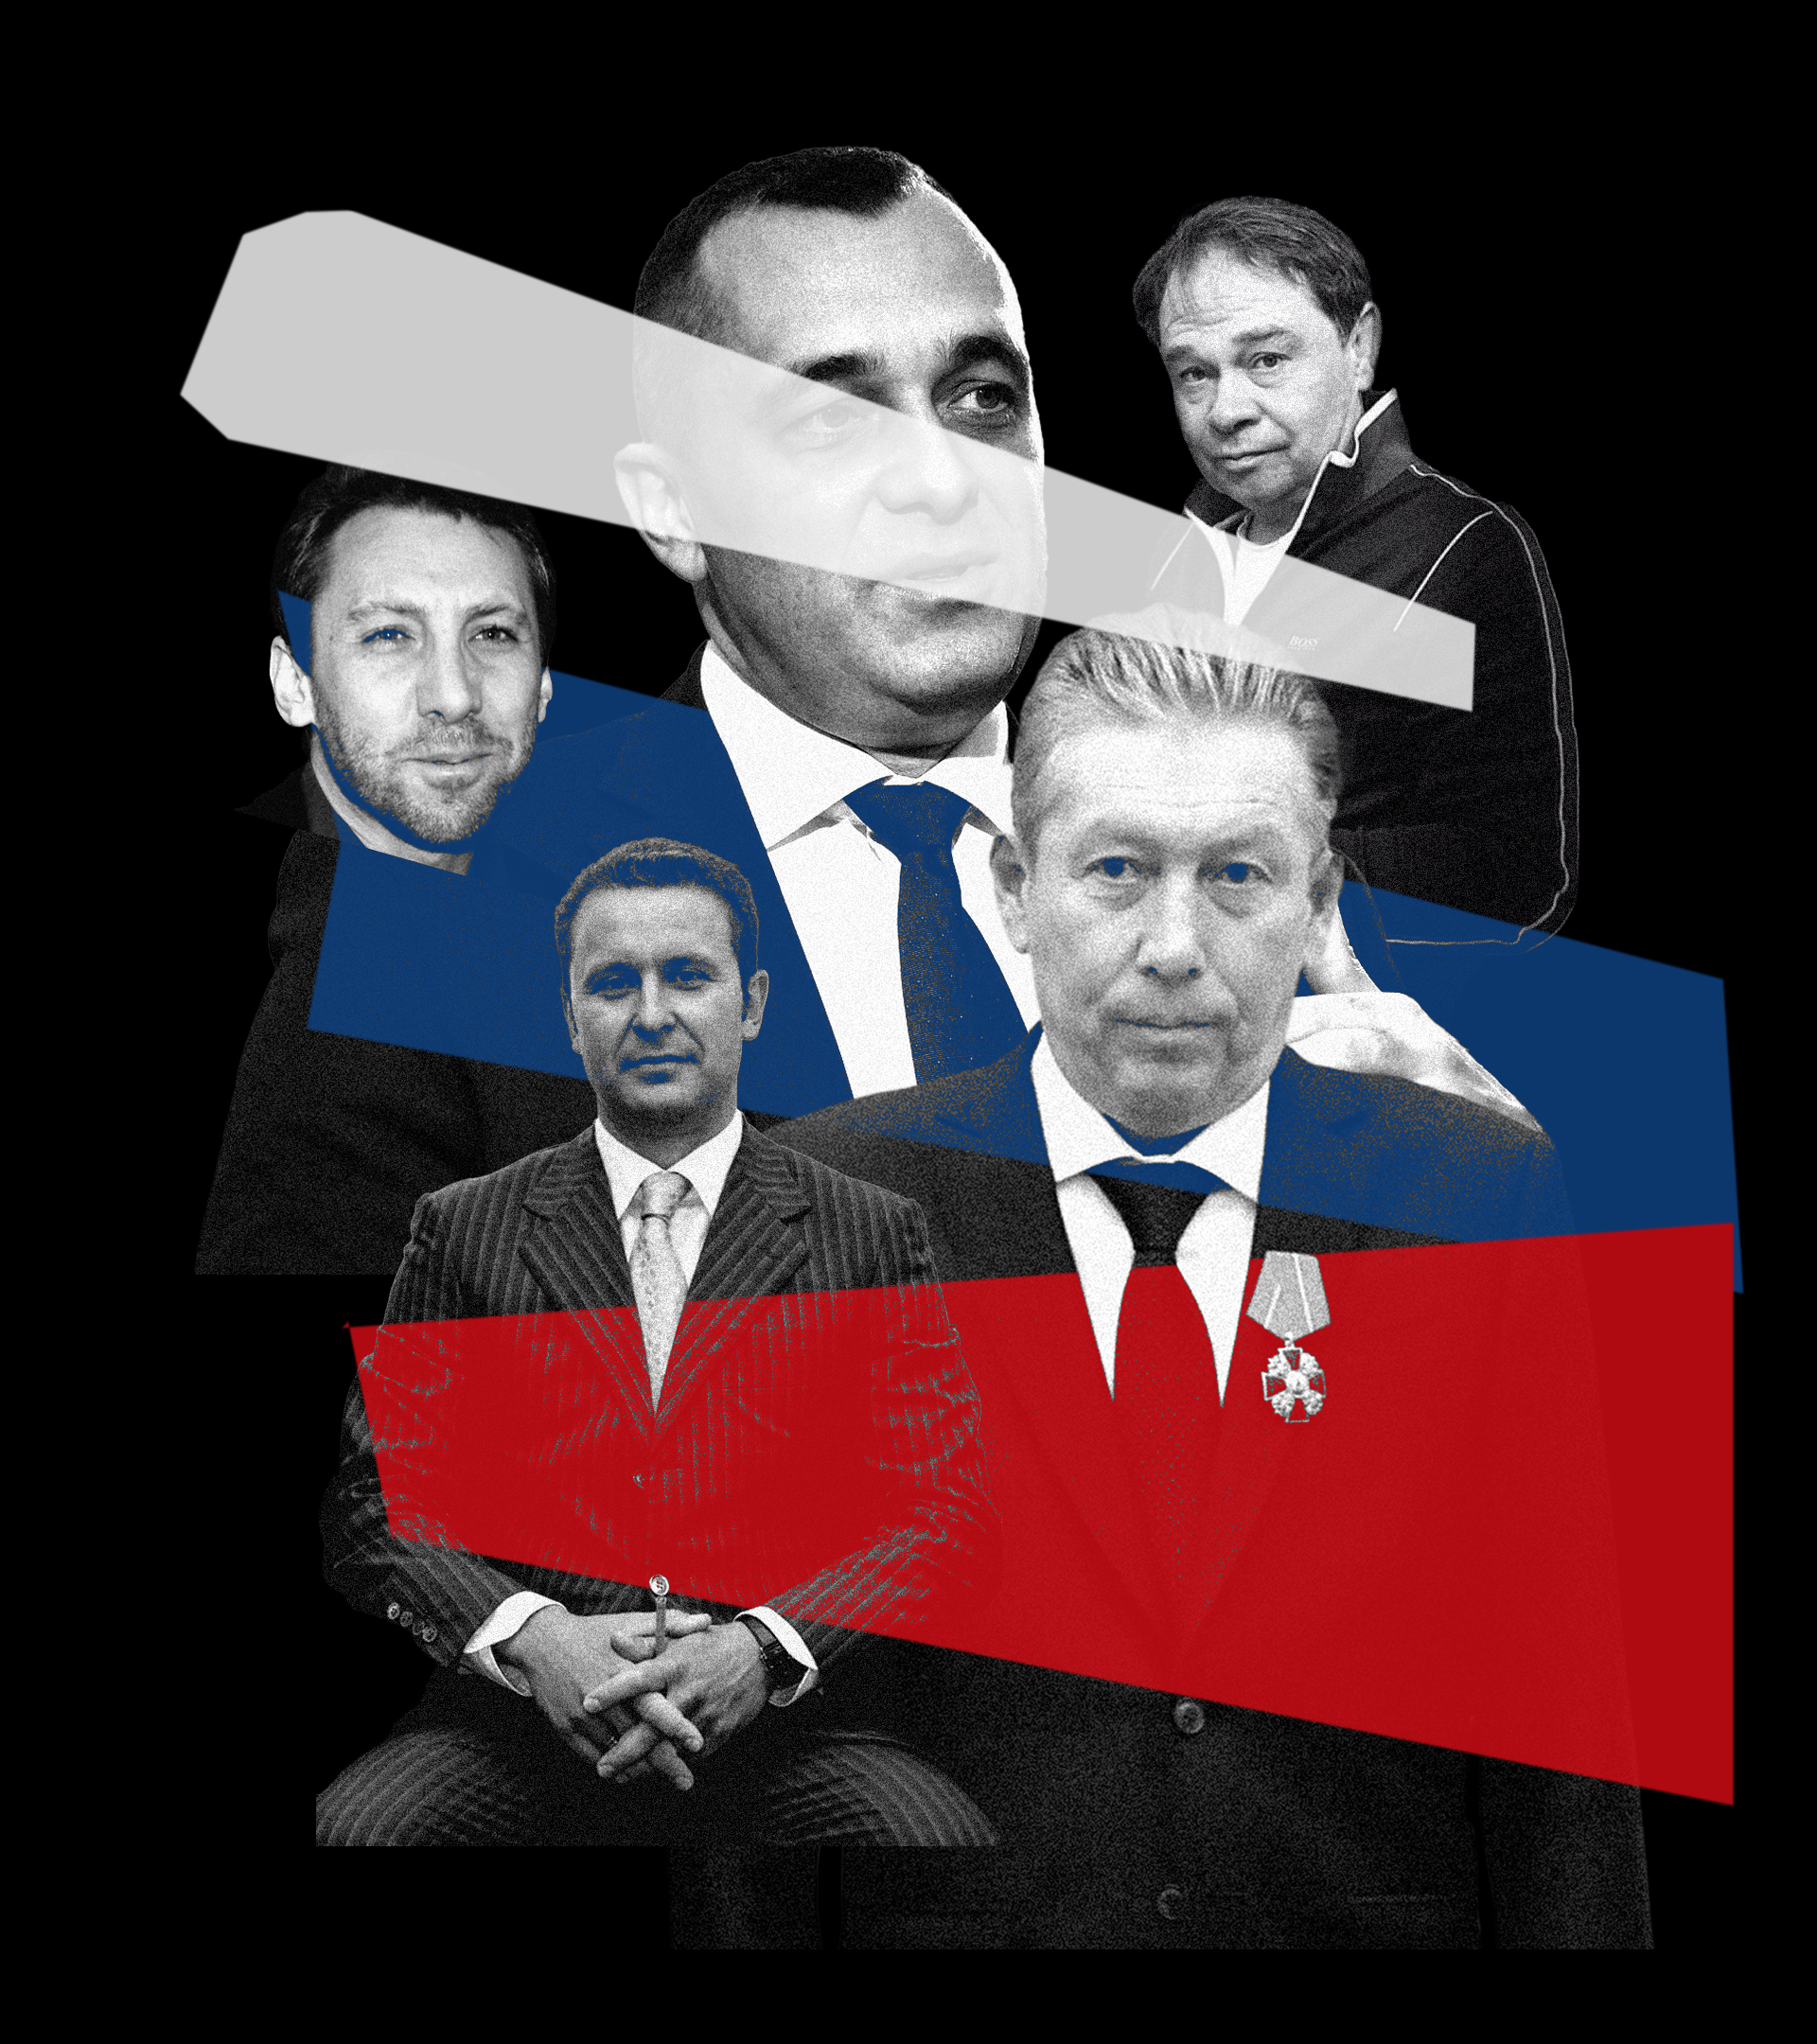 Los oligarcas Dan Rapoport, Vasily Melnikov, Alexander Subbotin, Ravil Maganov y Sergey Protosenya, todos fallecidos en extrañas circunstancias.